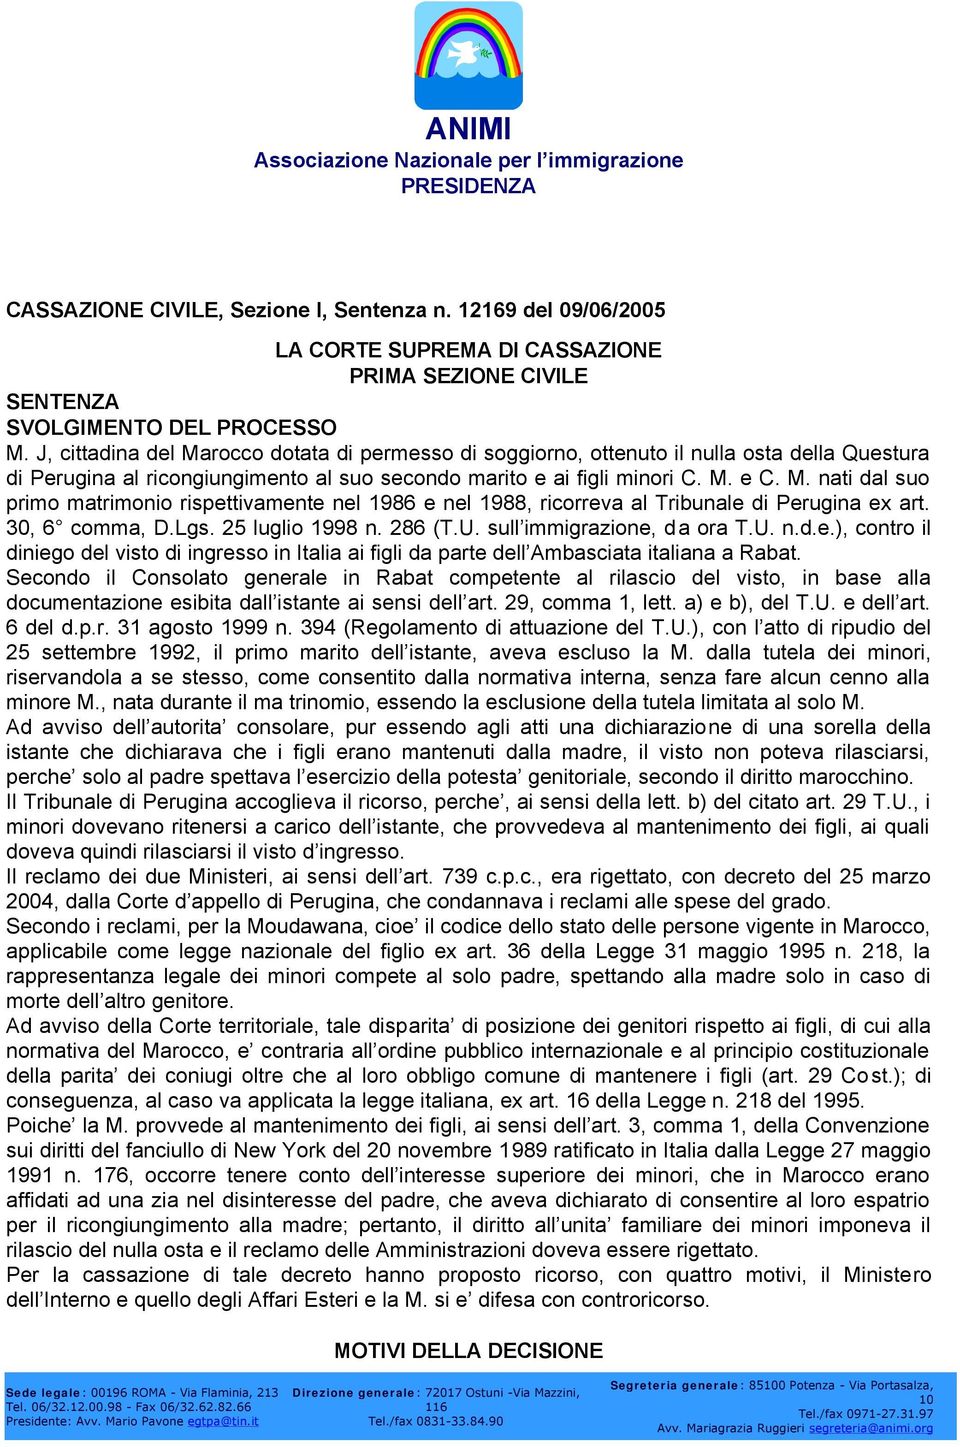 30, 6 comma, D.Lgs. 25 luglio 1998 n. 286 (T.U. sull immigrazione, da ora T.U. n.d.e.), contro il diniego del visto di ingresso in Italia ai figli da parte dell Ambasciata italiana a Rabat.